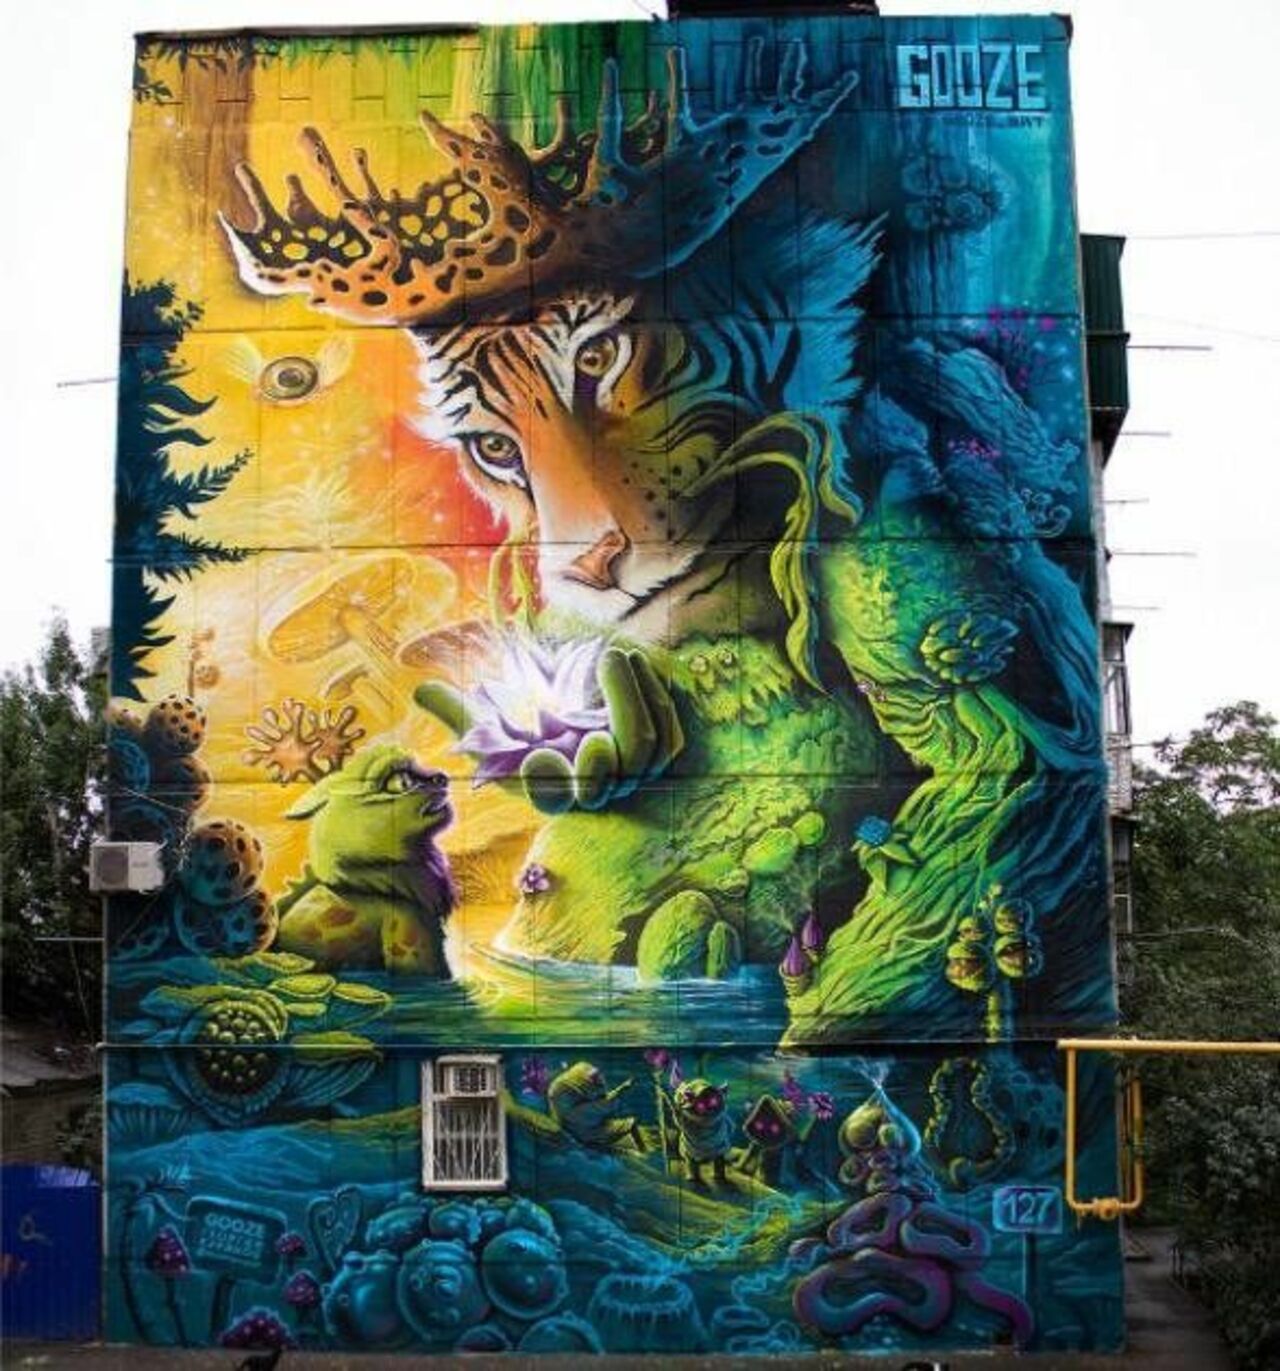 Street Art by Gooze in Krasnodar Russia #streetart #mural #graffiti #art https://t.co/dwFK0y04bo